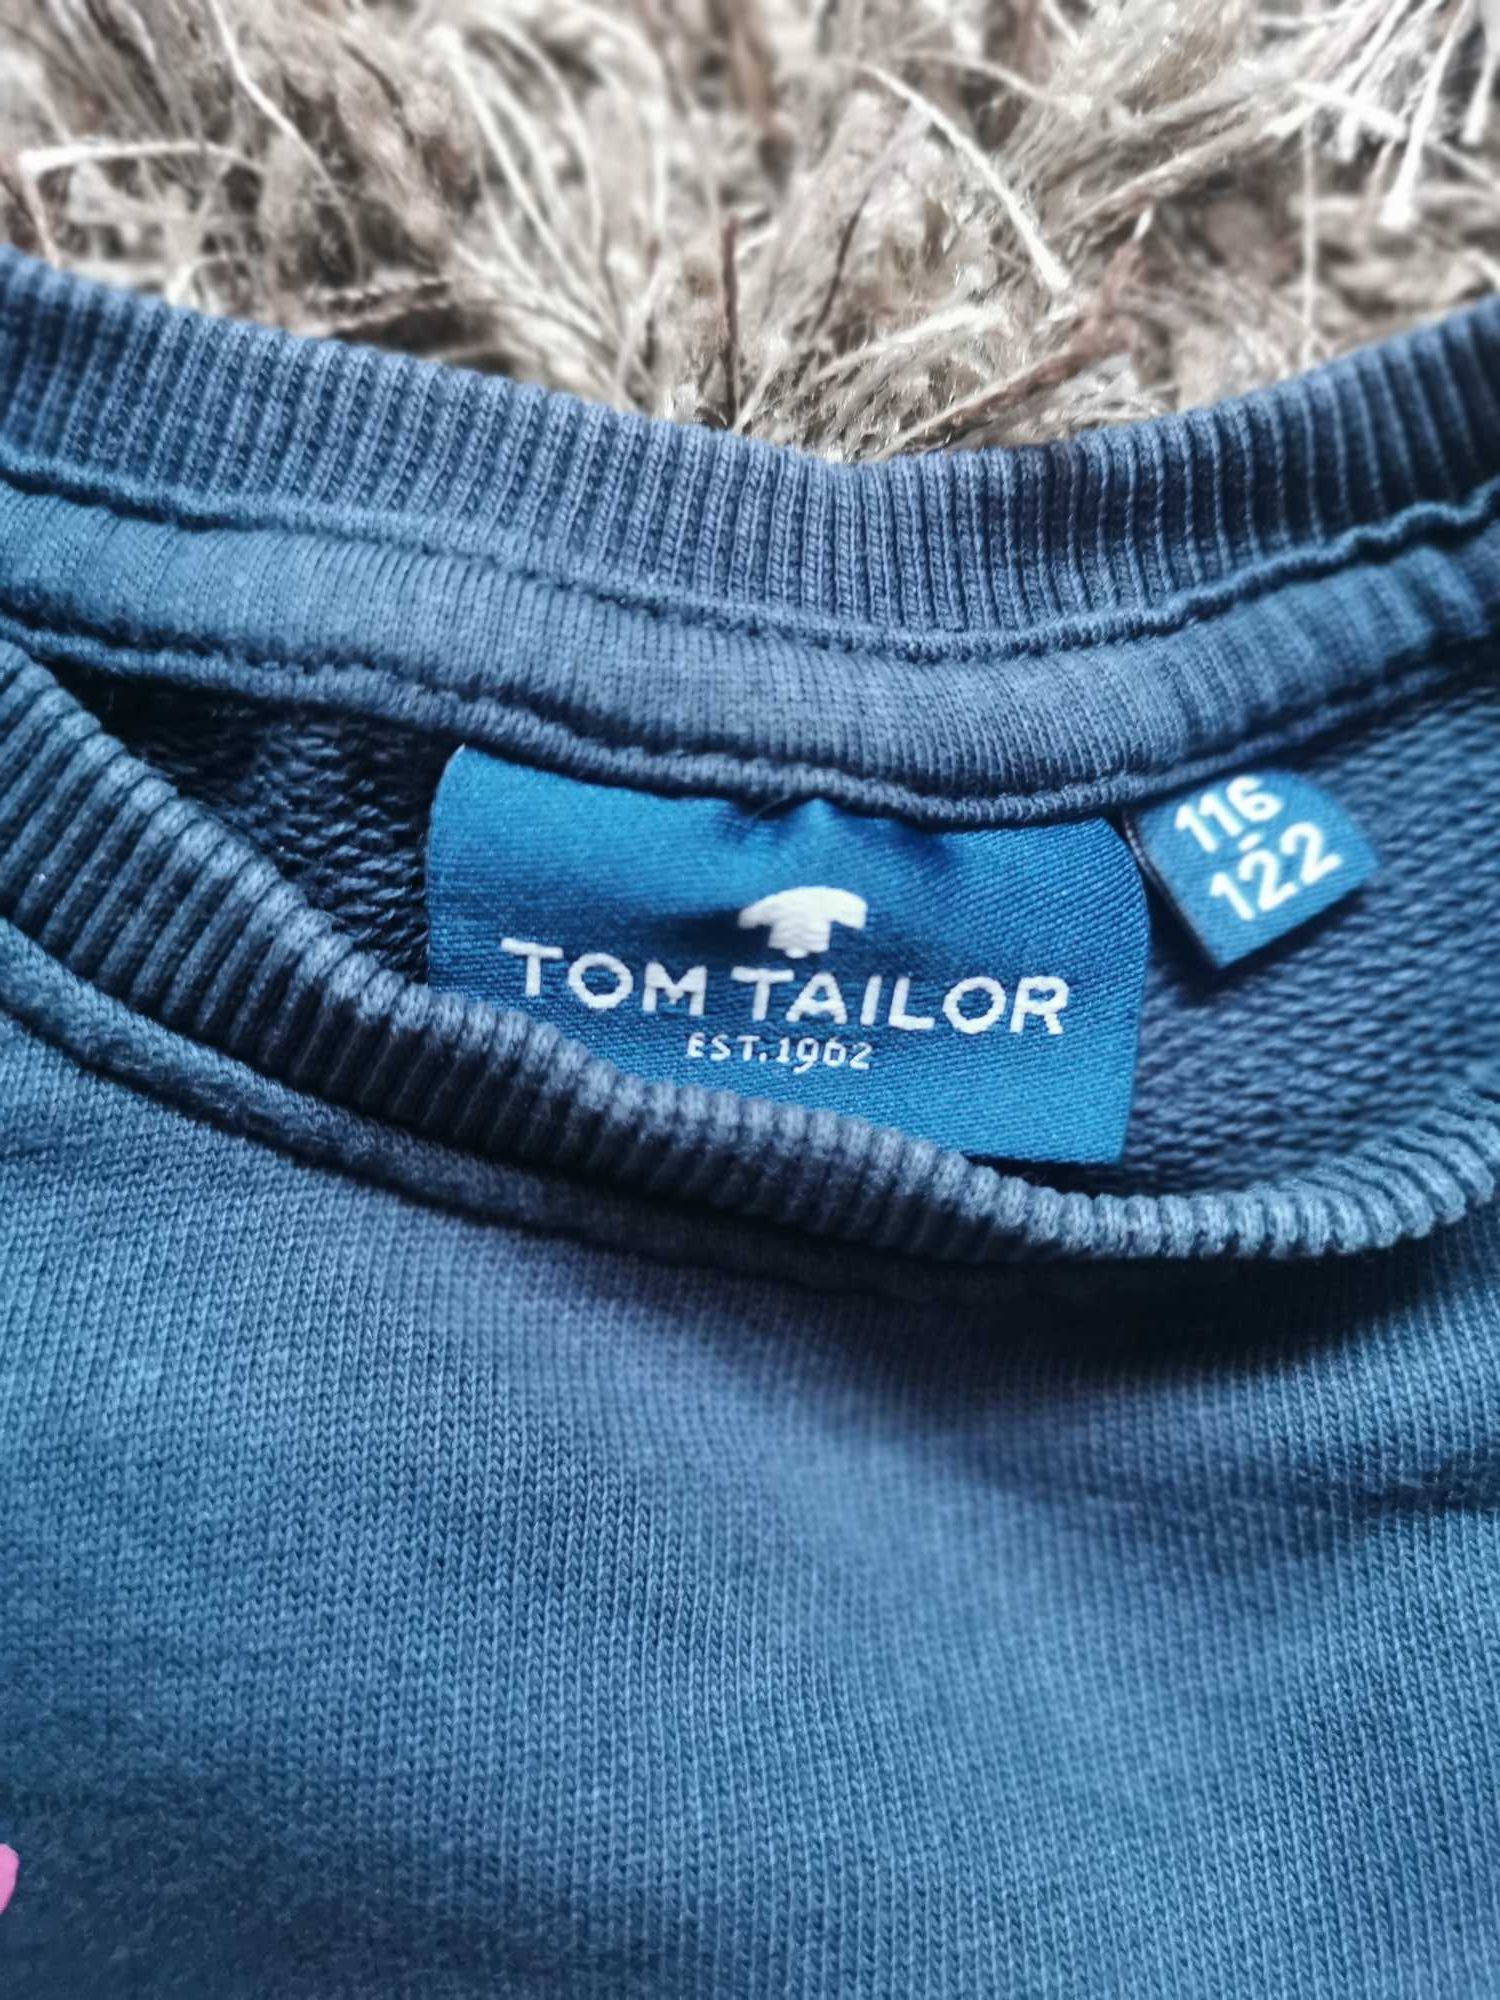 Bluza #dziewczynka #rozmiar 116-122 #granatowa #Tom Tailor